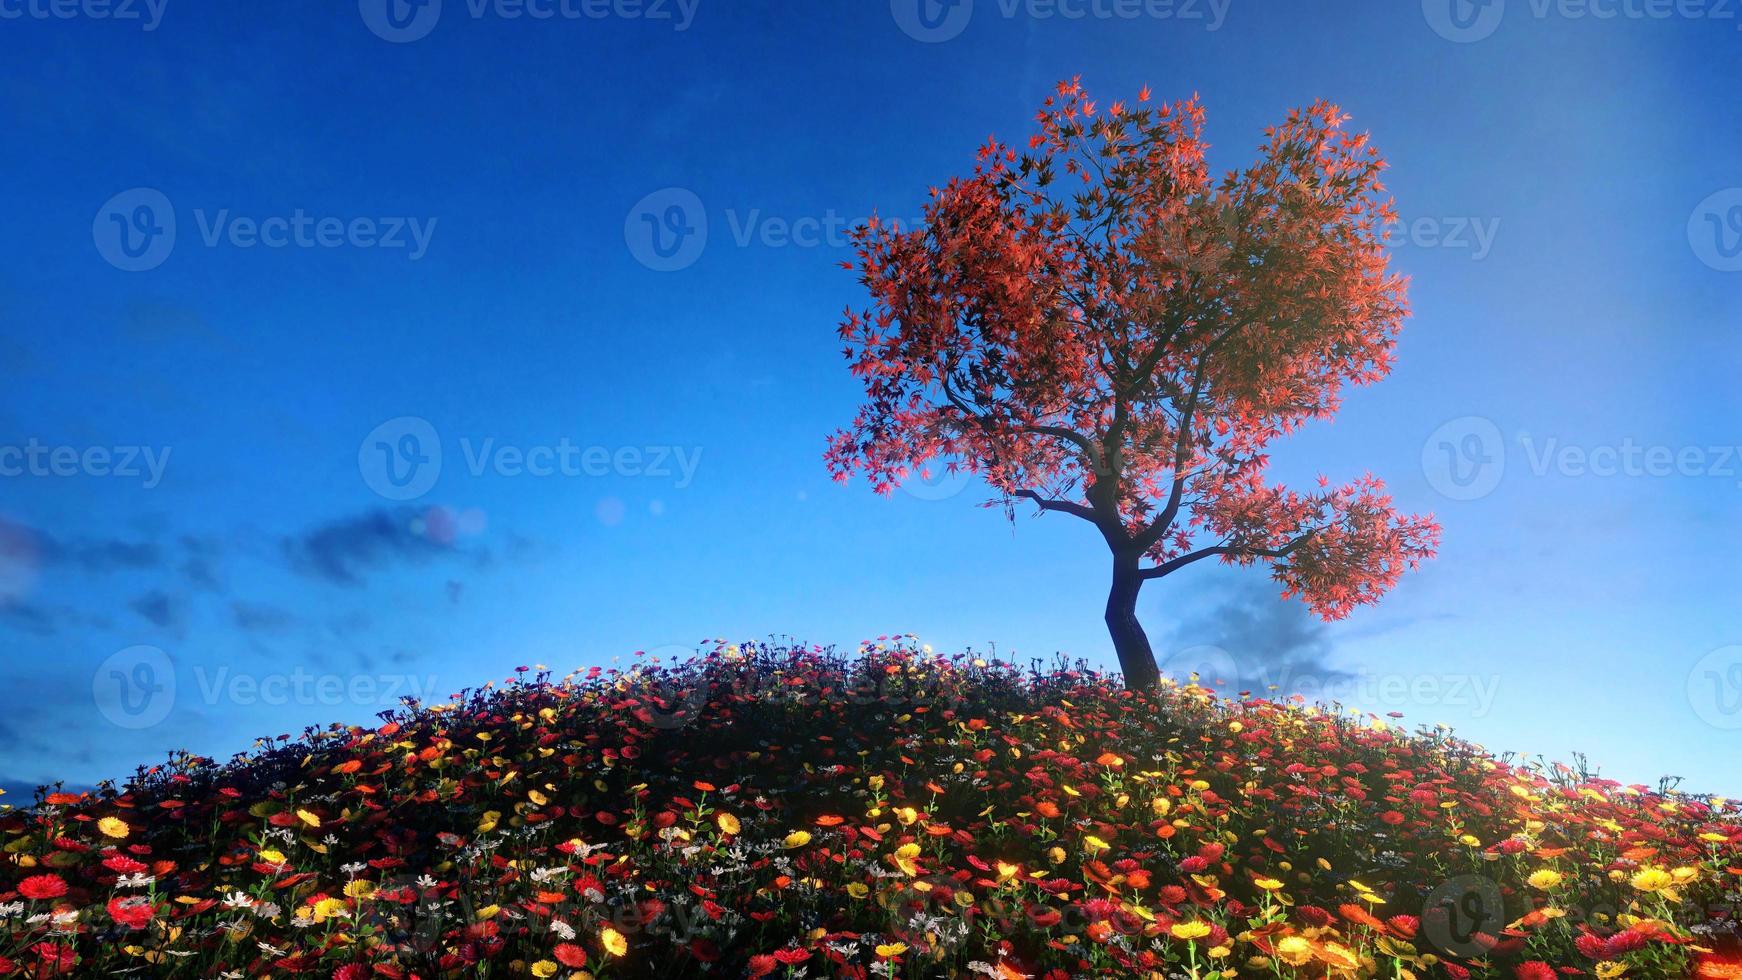 fält av blommor och stora träd som får solljuset under dagen. ljus himmel och moln 3d-rendering foto